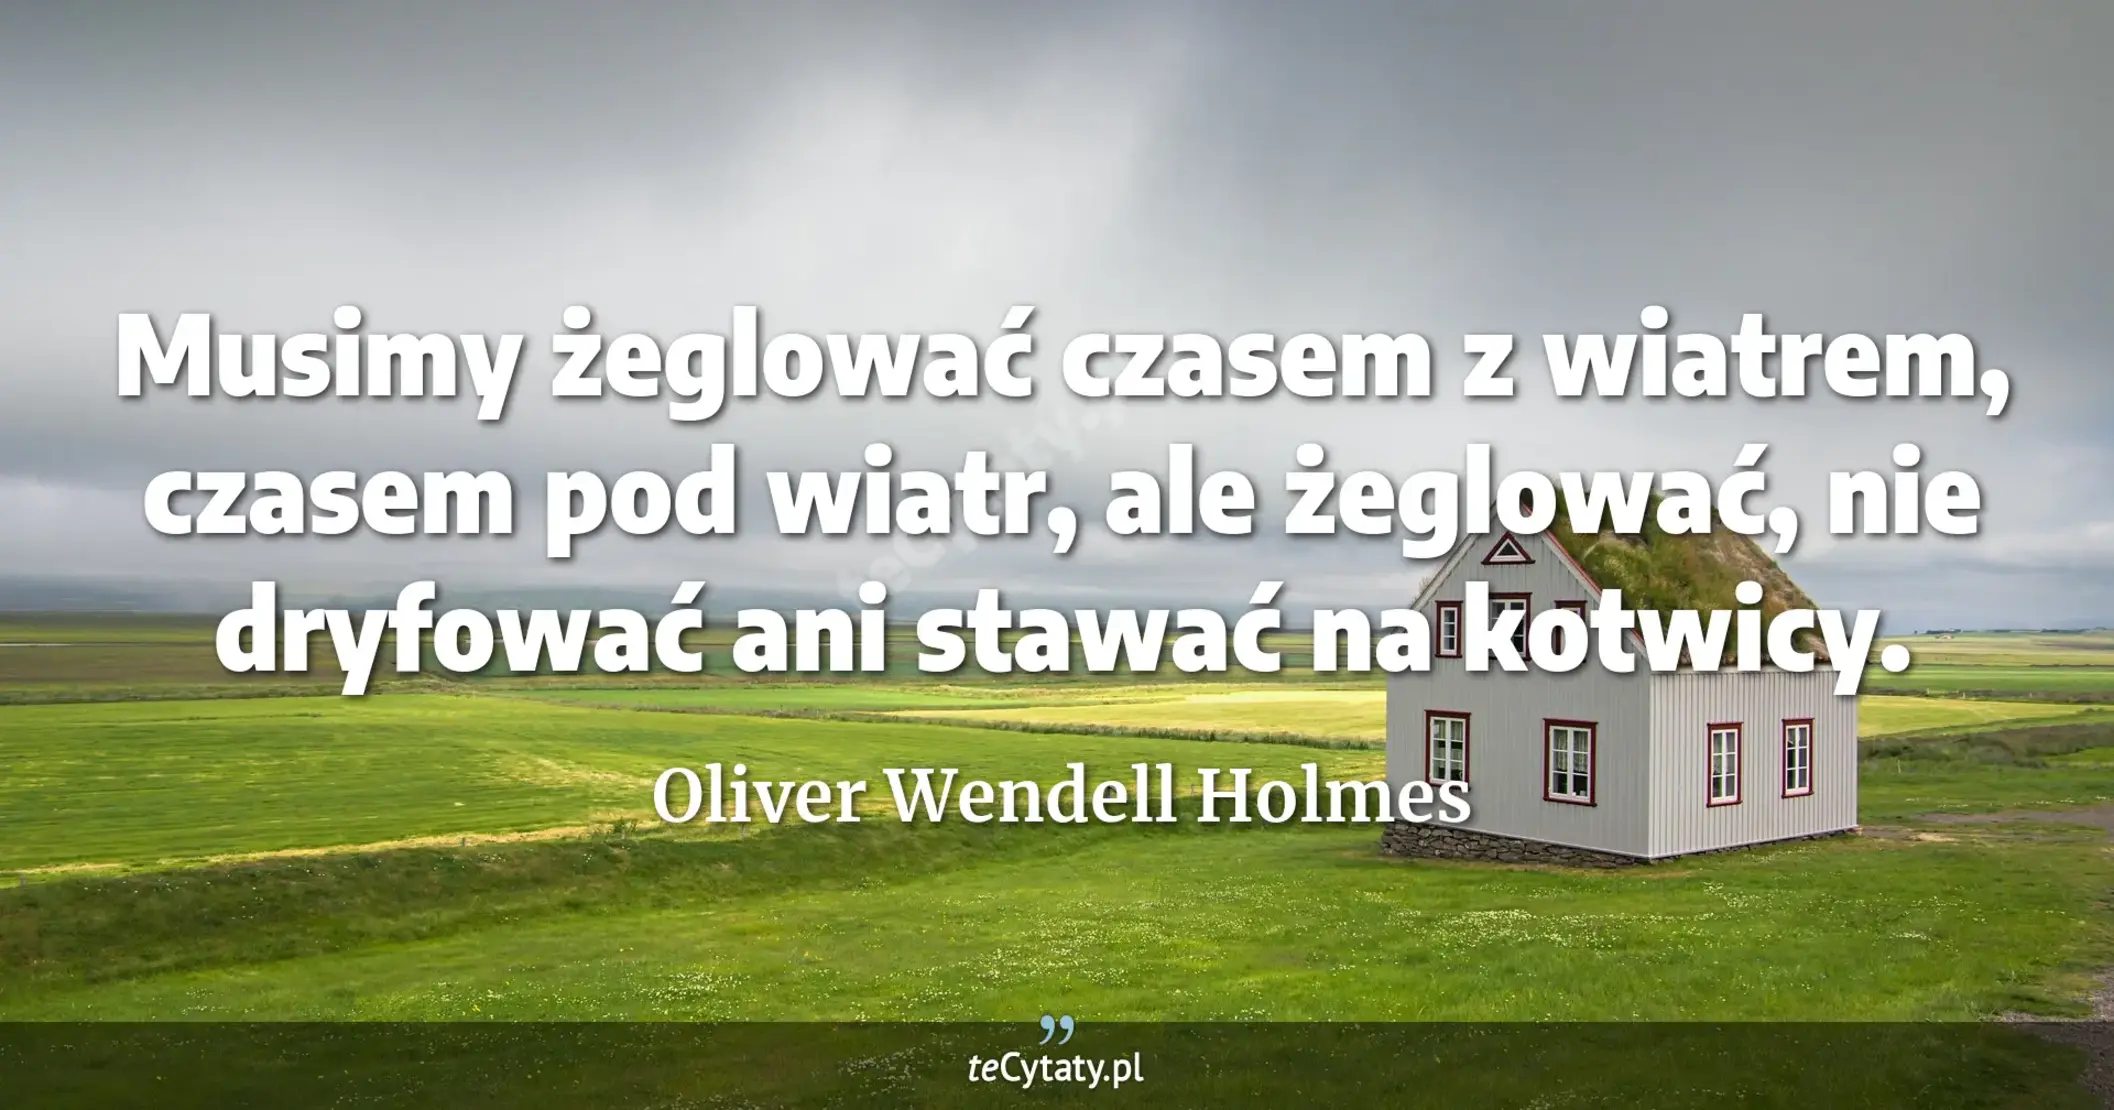 Musimy żeglować czasem z wiatrem, czasem pod wiatr, ale żeglować, nie dryfować ani stawać na kotwicy. - Oliver Wendell Holmes